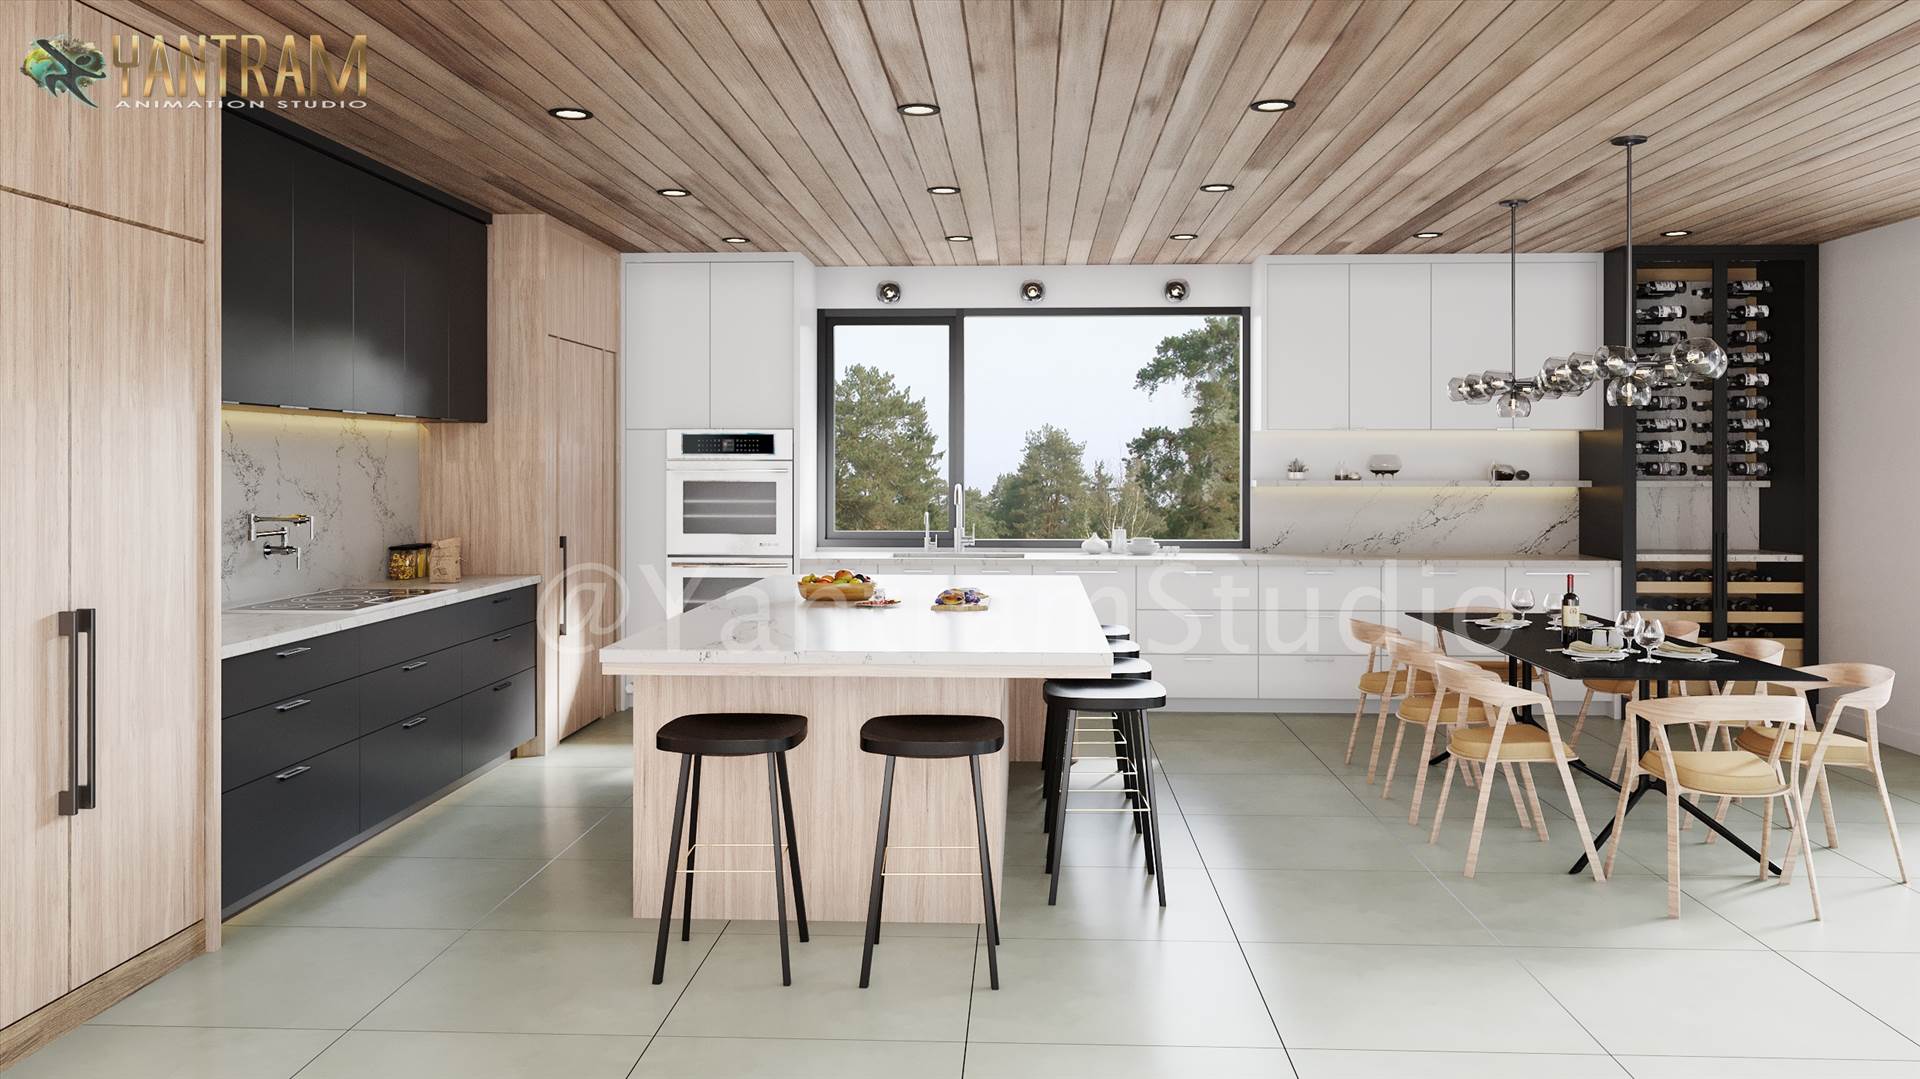 3D-Interior Designers- High-classy-kitchen-view-2-in-San Diego.jpg -  by Yantramarchitecturaldesignstudio